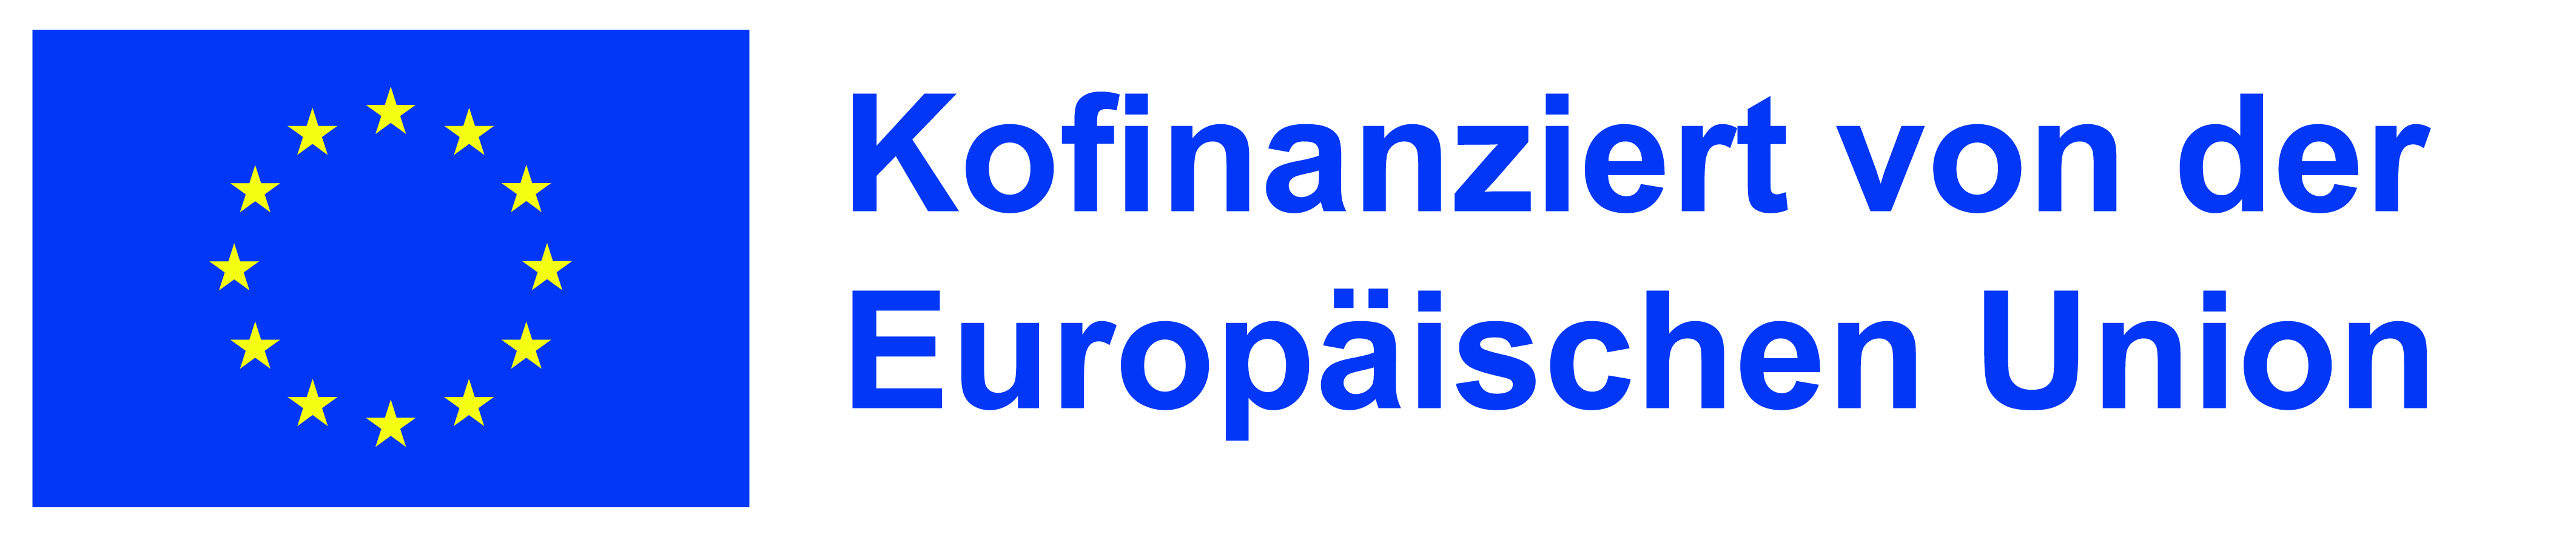 Logo EU Programm Erasmus+